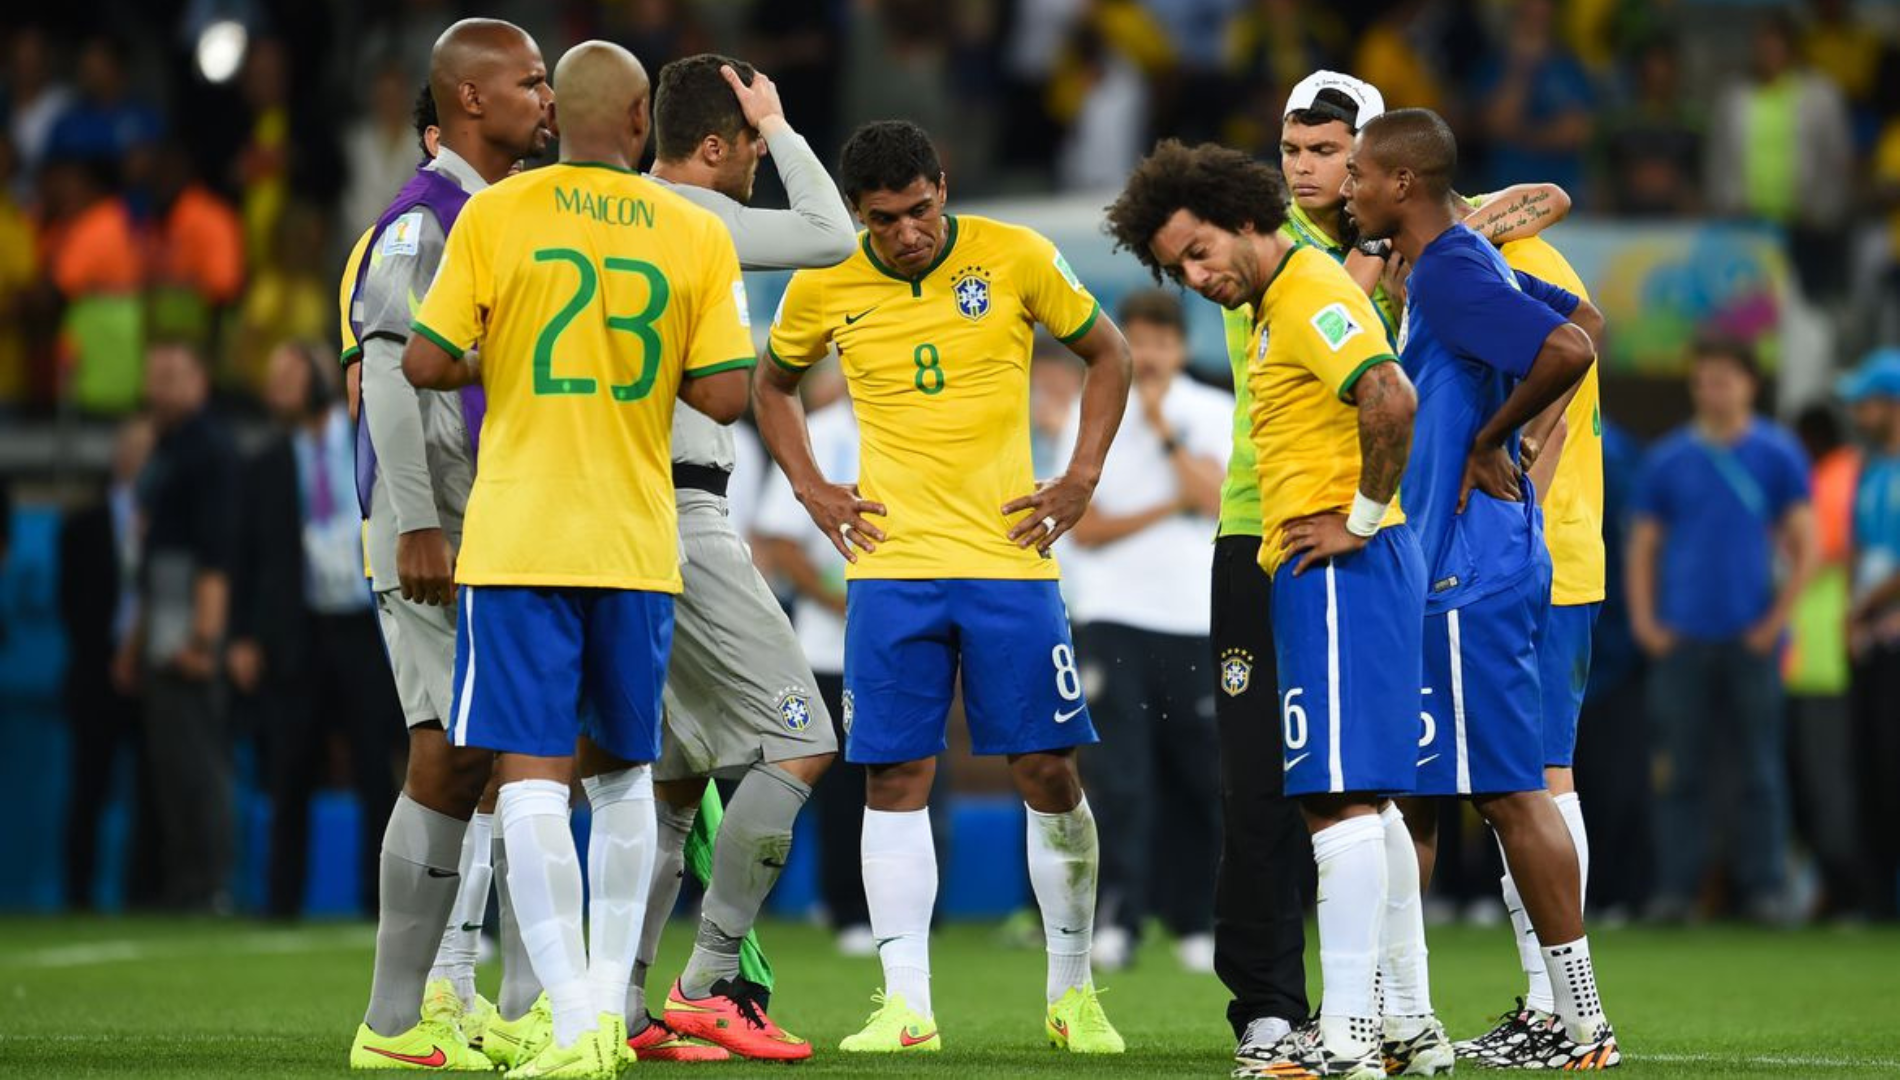 Seleção brasileira de futebol após perder para a seleção alemã